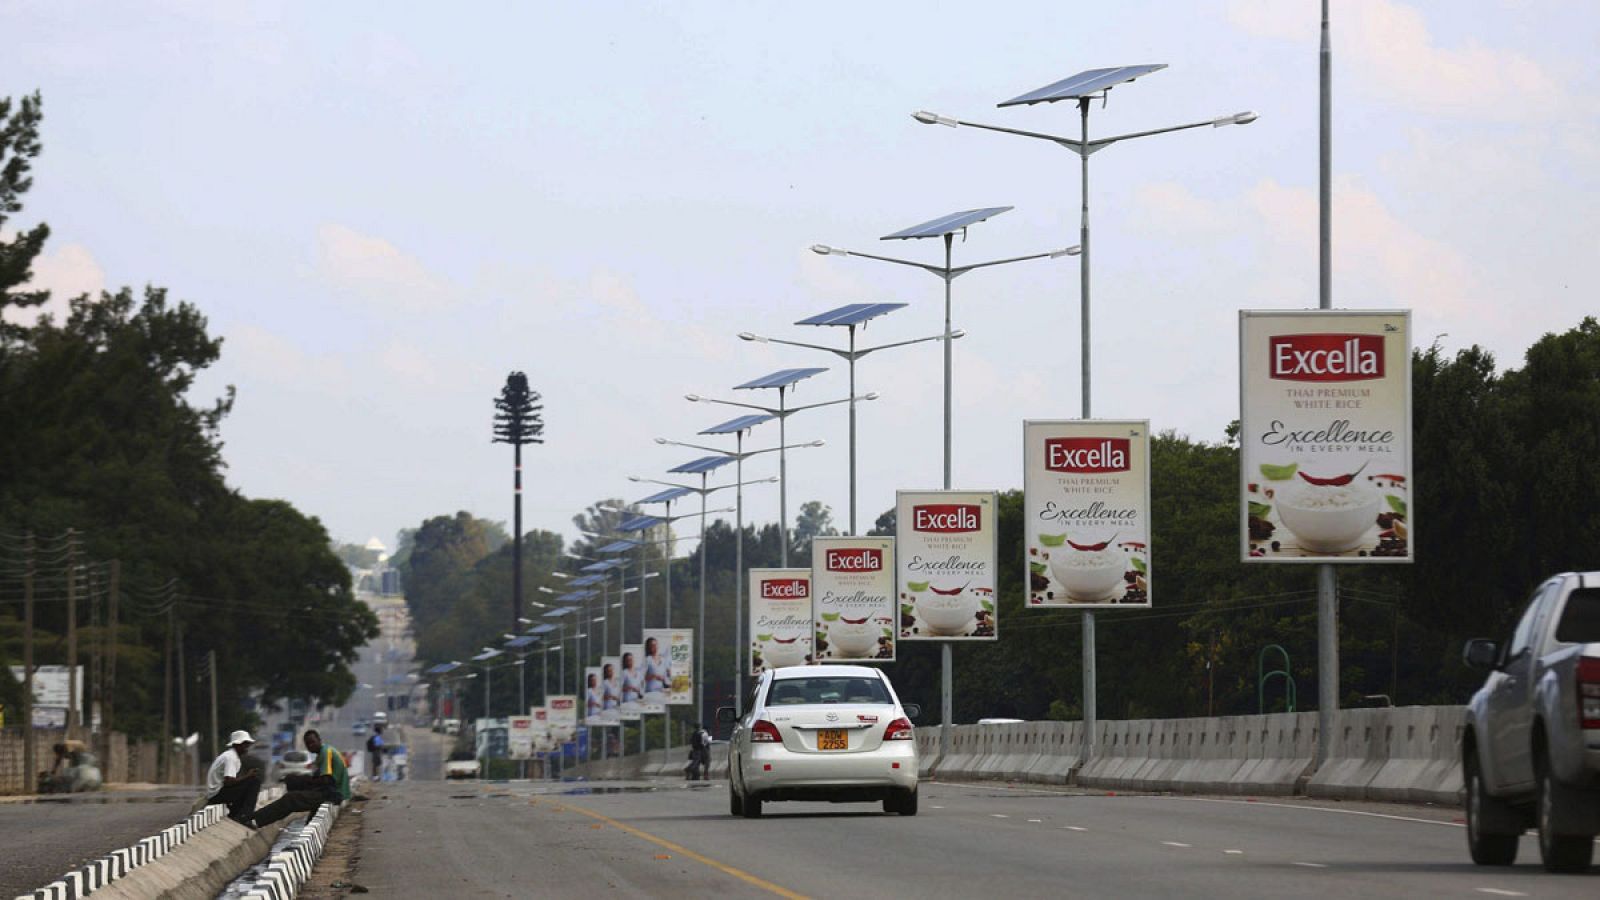 Varios coches circulan por la carretera del aeropuerto de Harare, Zimbabue, el 8 de febrero del 2016, iluminada con farolas alimentadas con energía solar.